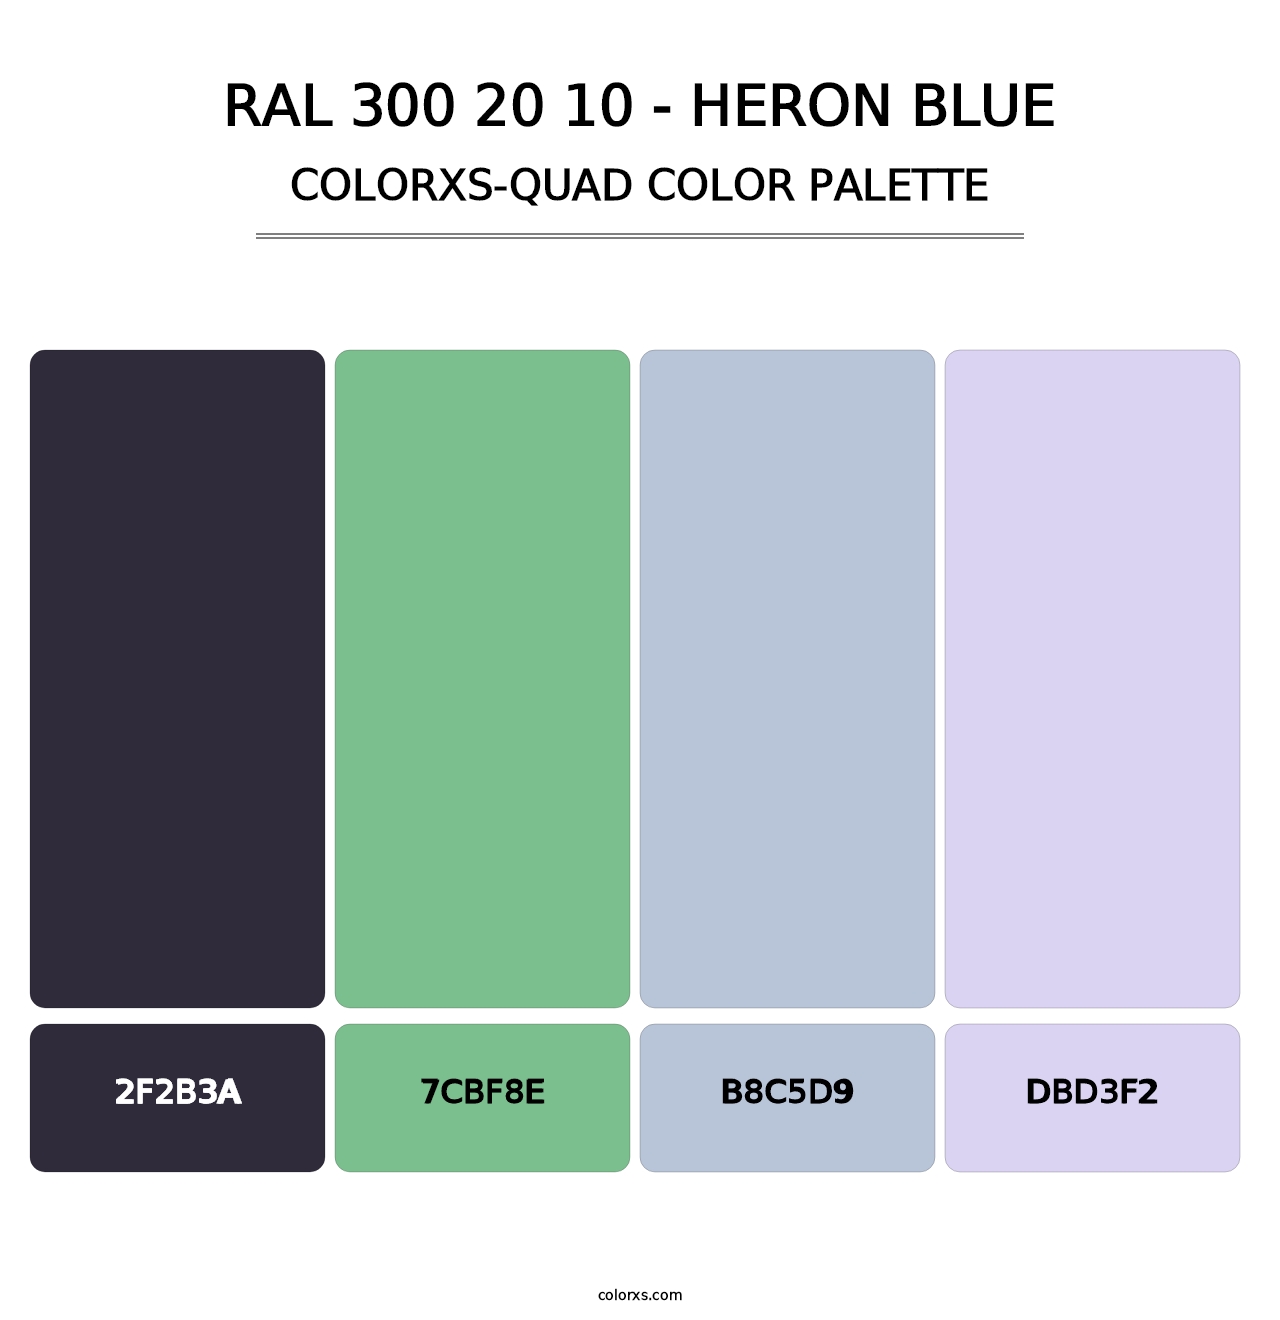 RAL 300 20 10 - Heron Blue - Colorxs Quad Palette